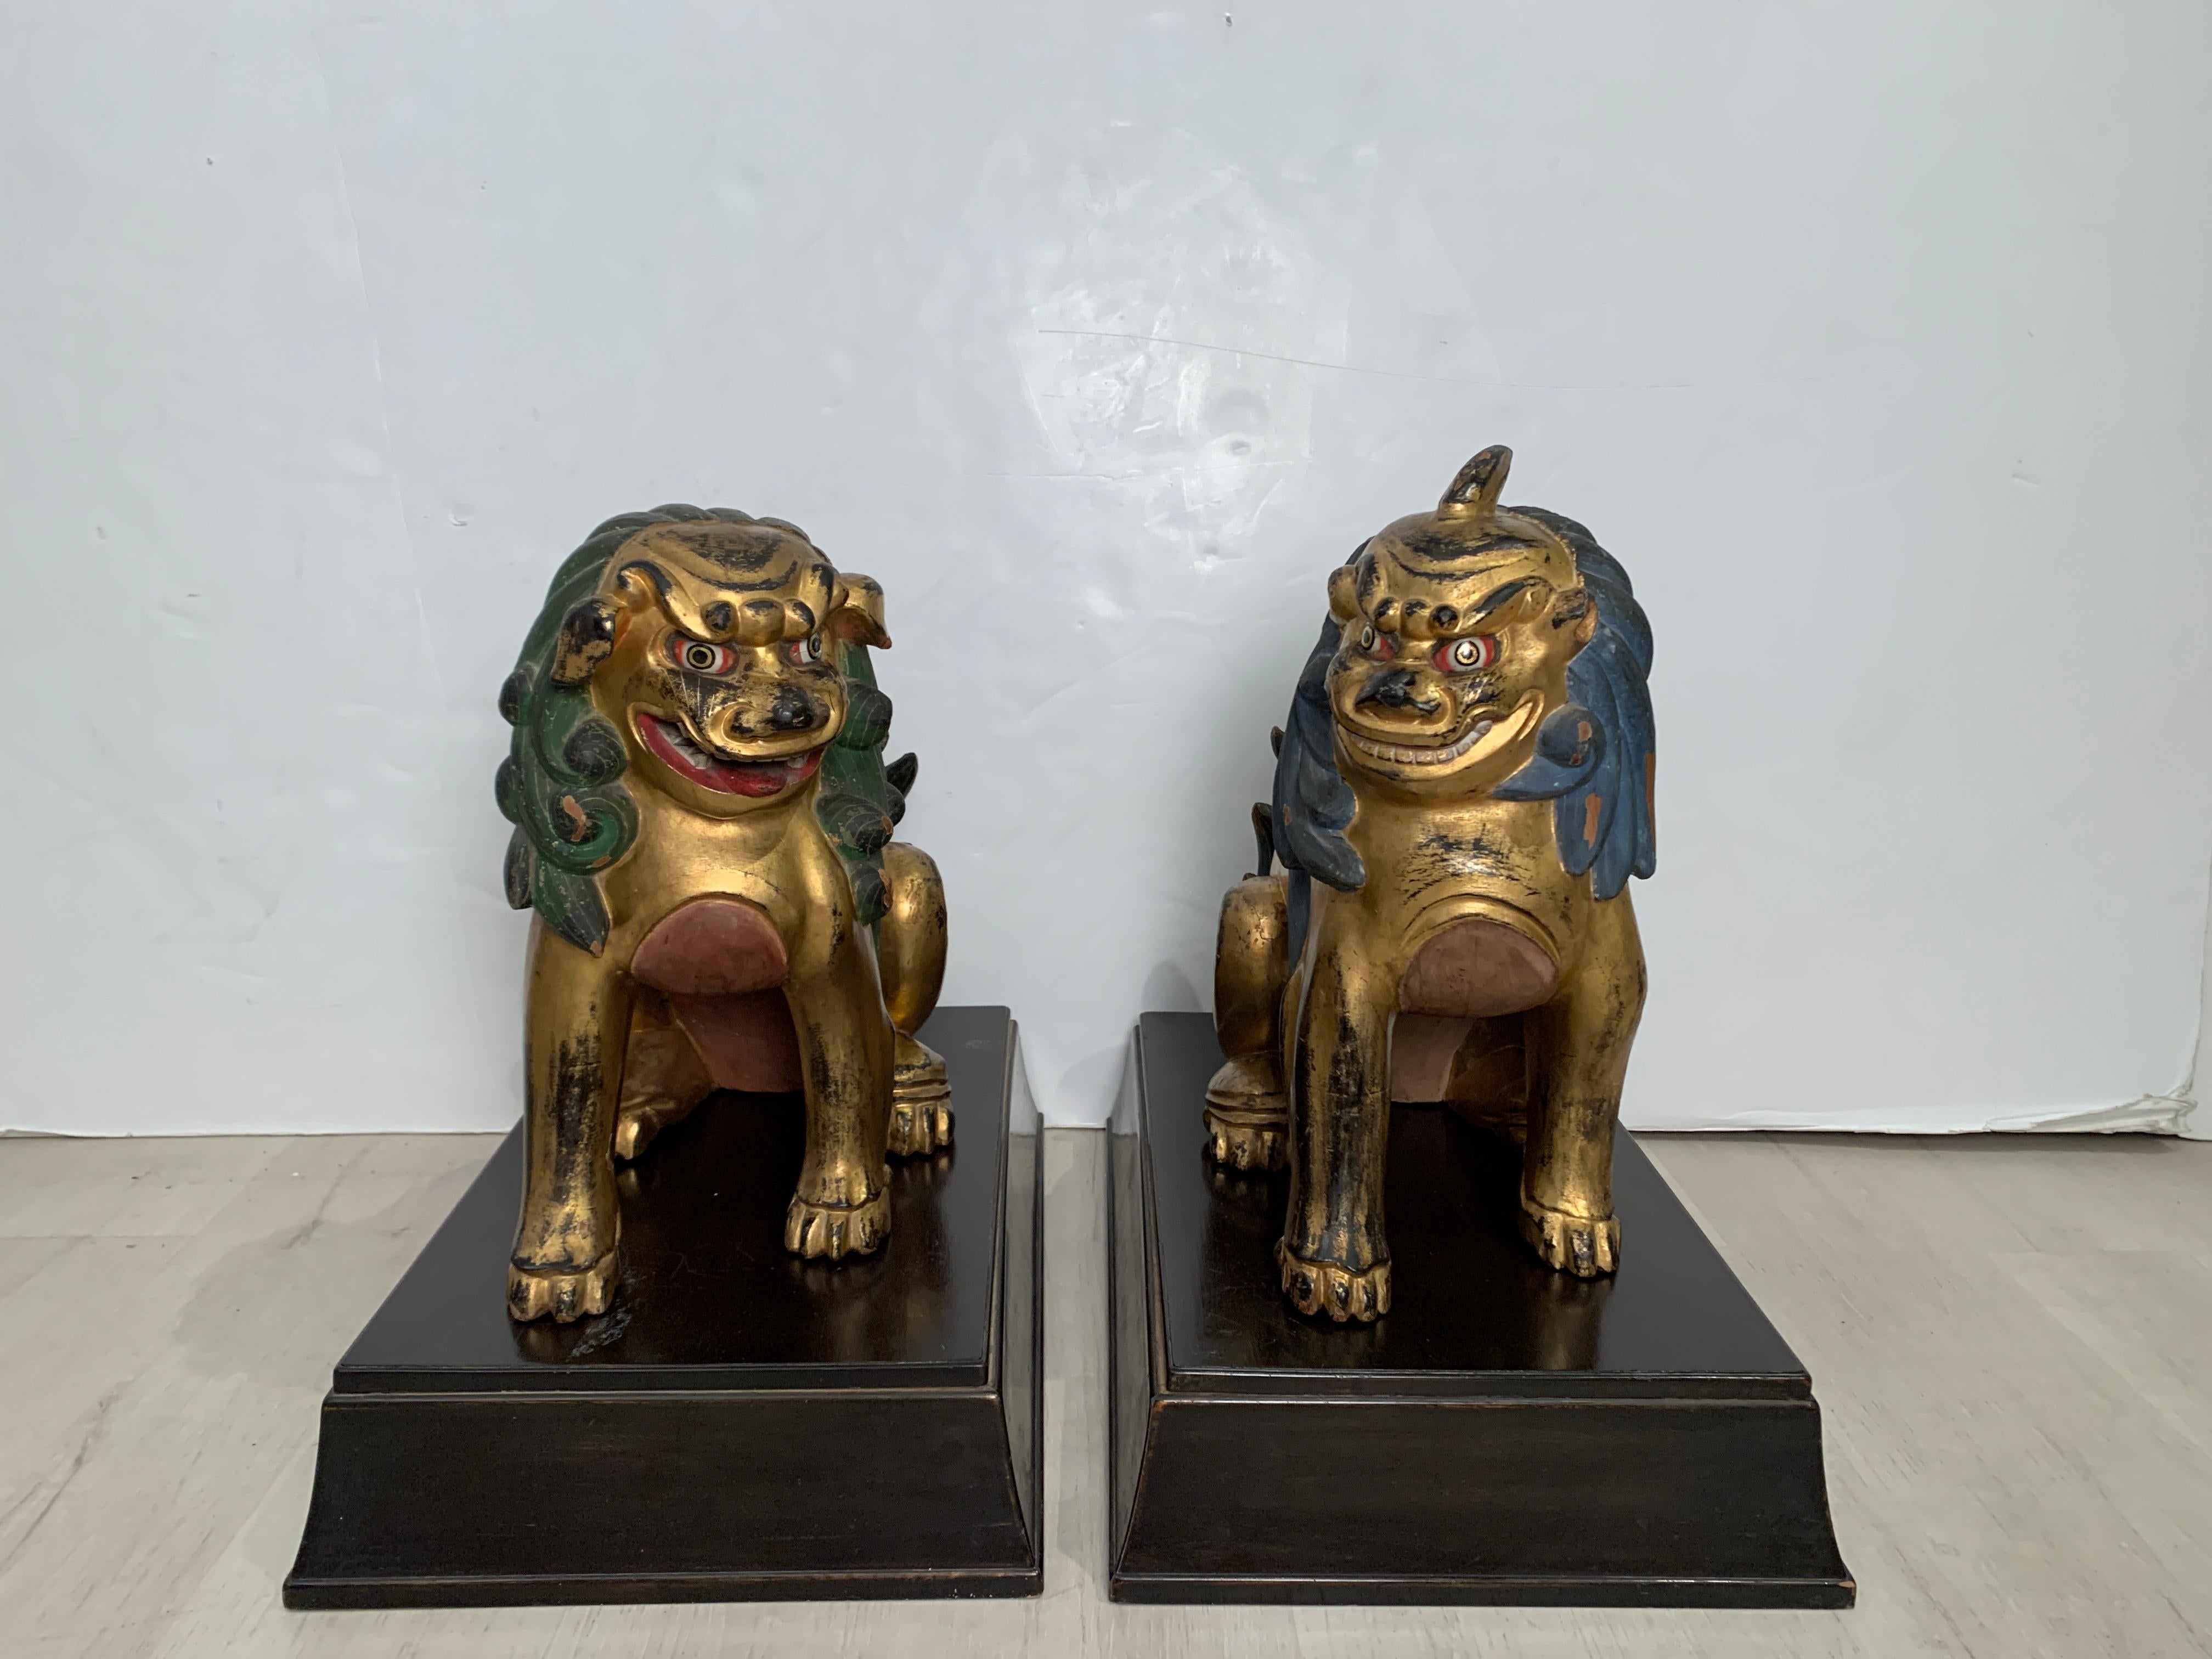 Ein charmantes und verschmitztes Paar japanischer geschnitzter, vergoldeter und bemalter Komainu, die oft mit Foo-Hunden oder Foo-Löwen verwechselt werden, Showa-Periode, 1920er Jahre, Japan. 

Die beiden Komainu, die Wächterlöwen, sind auf ihren